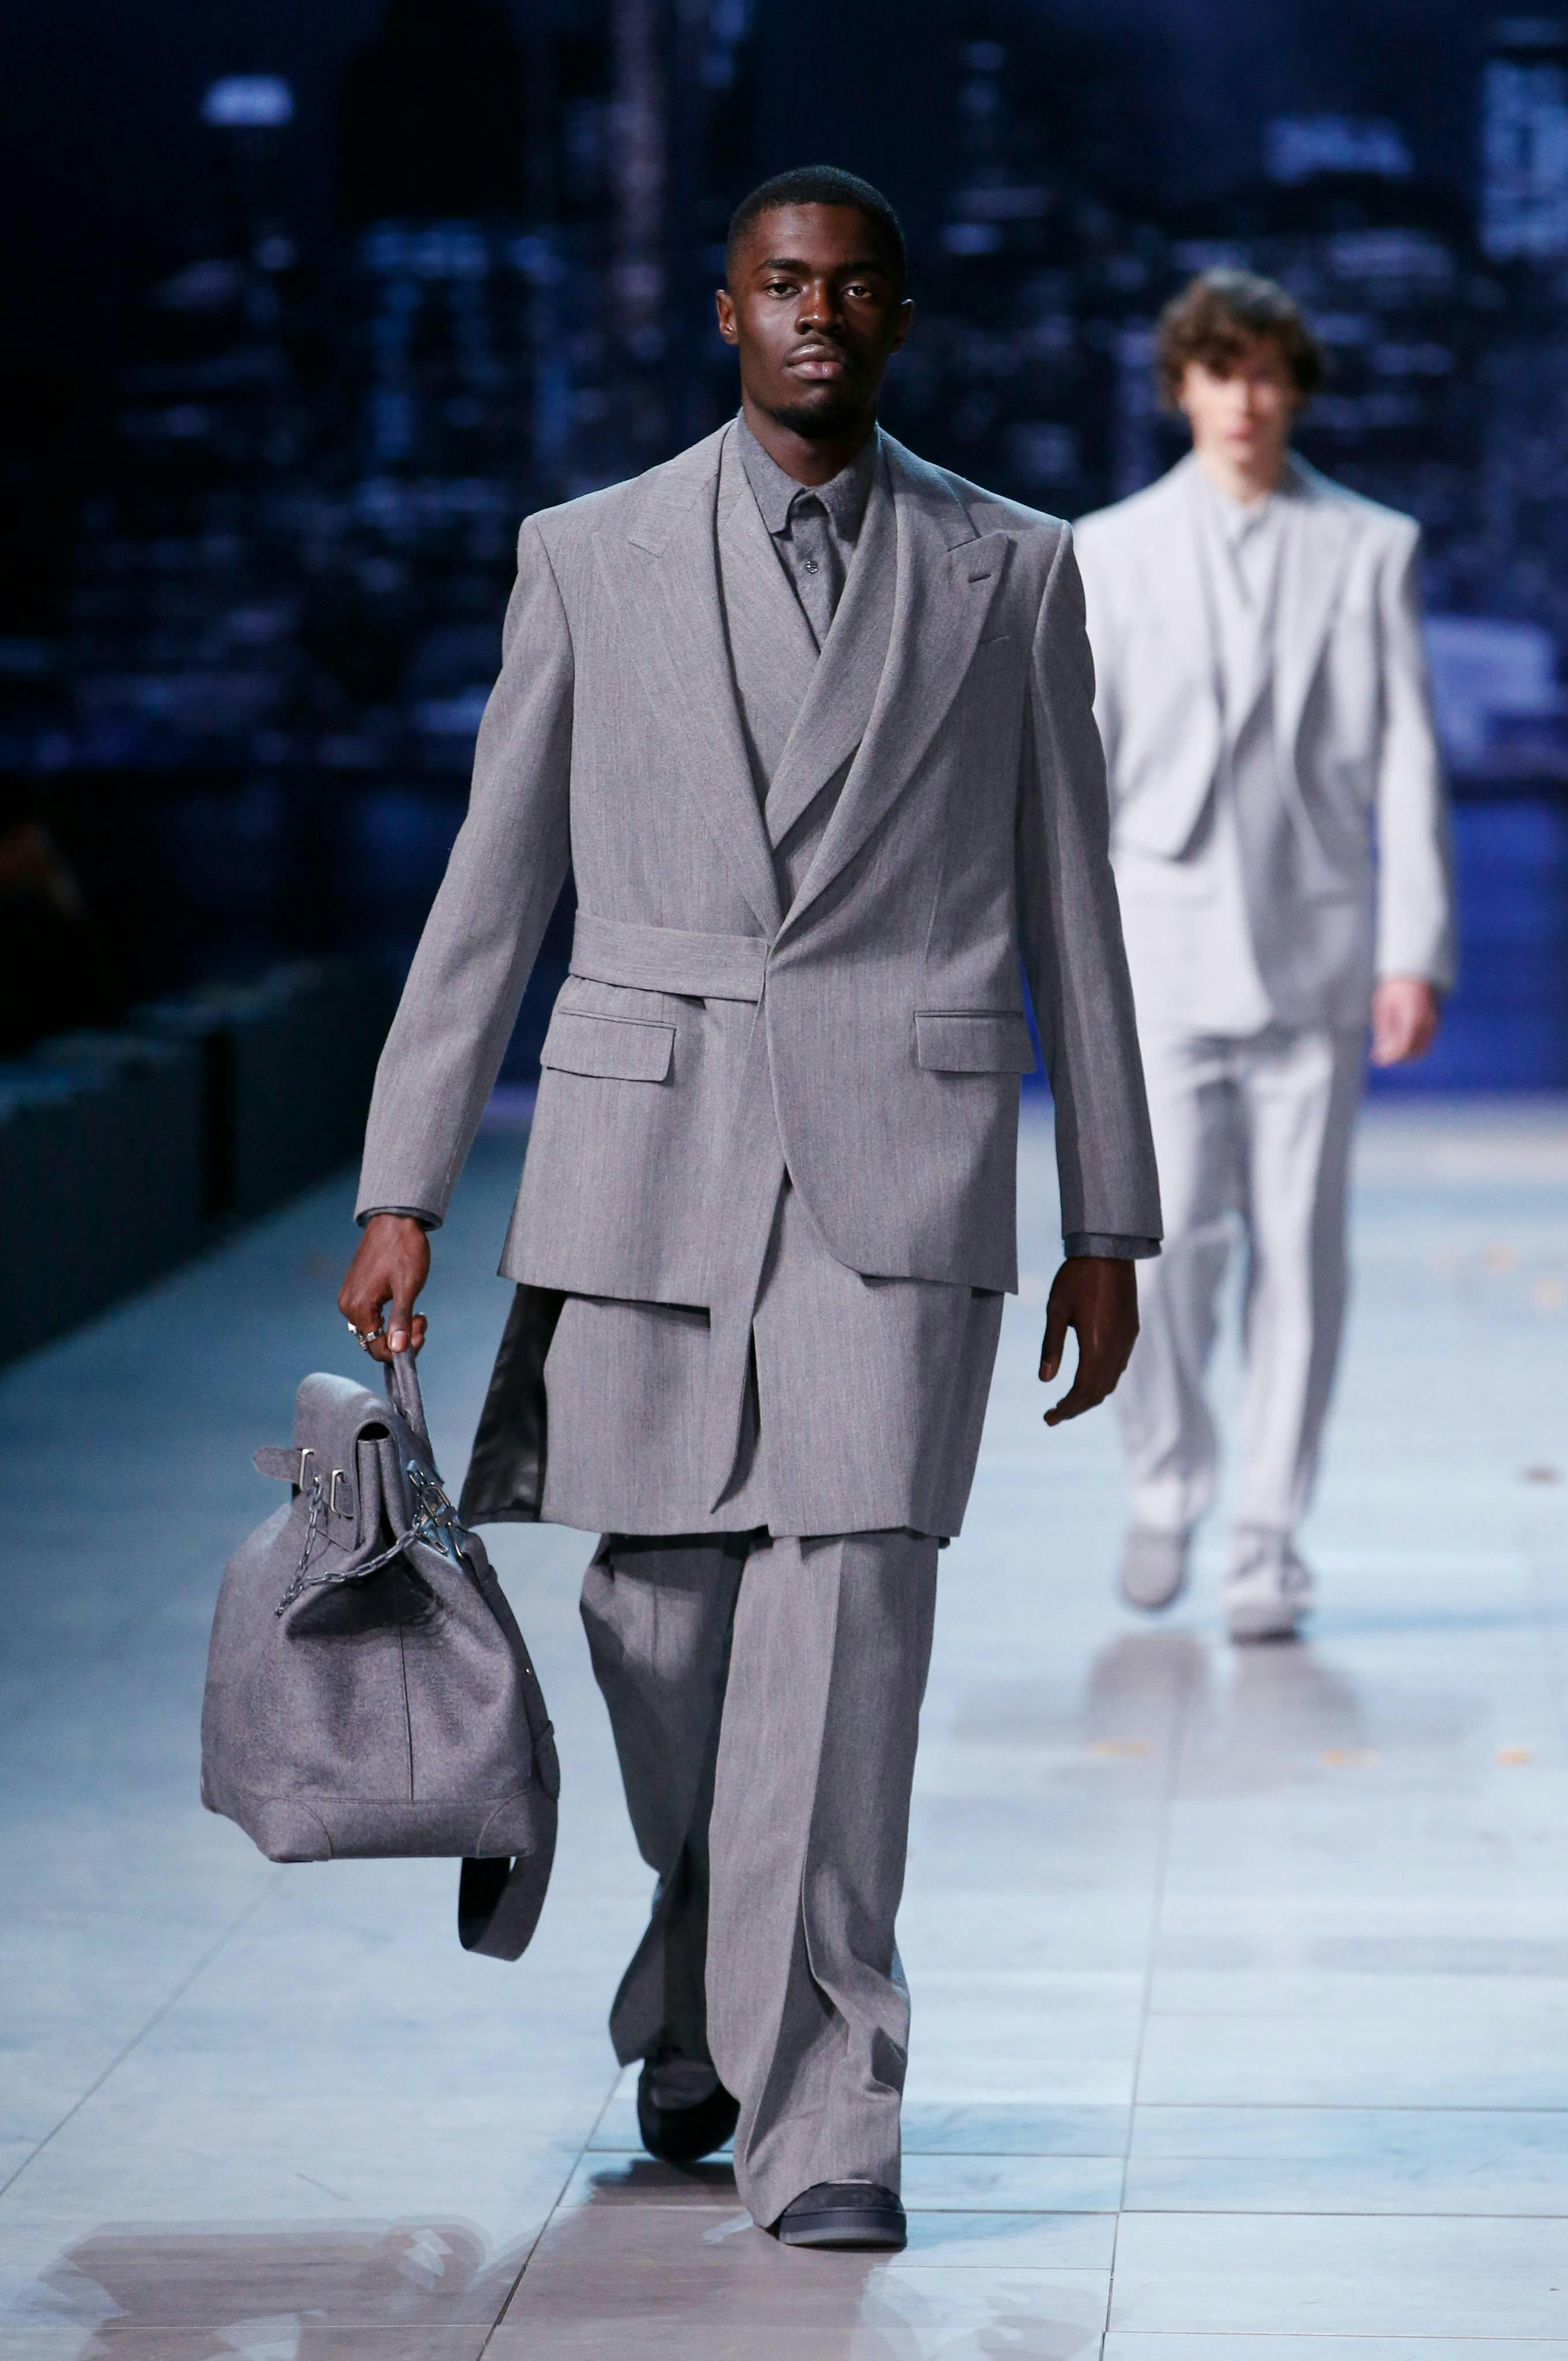 clothing suit overcoat coat person handbag accessories bag man tie